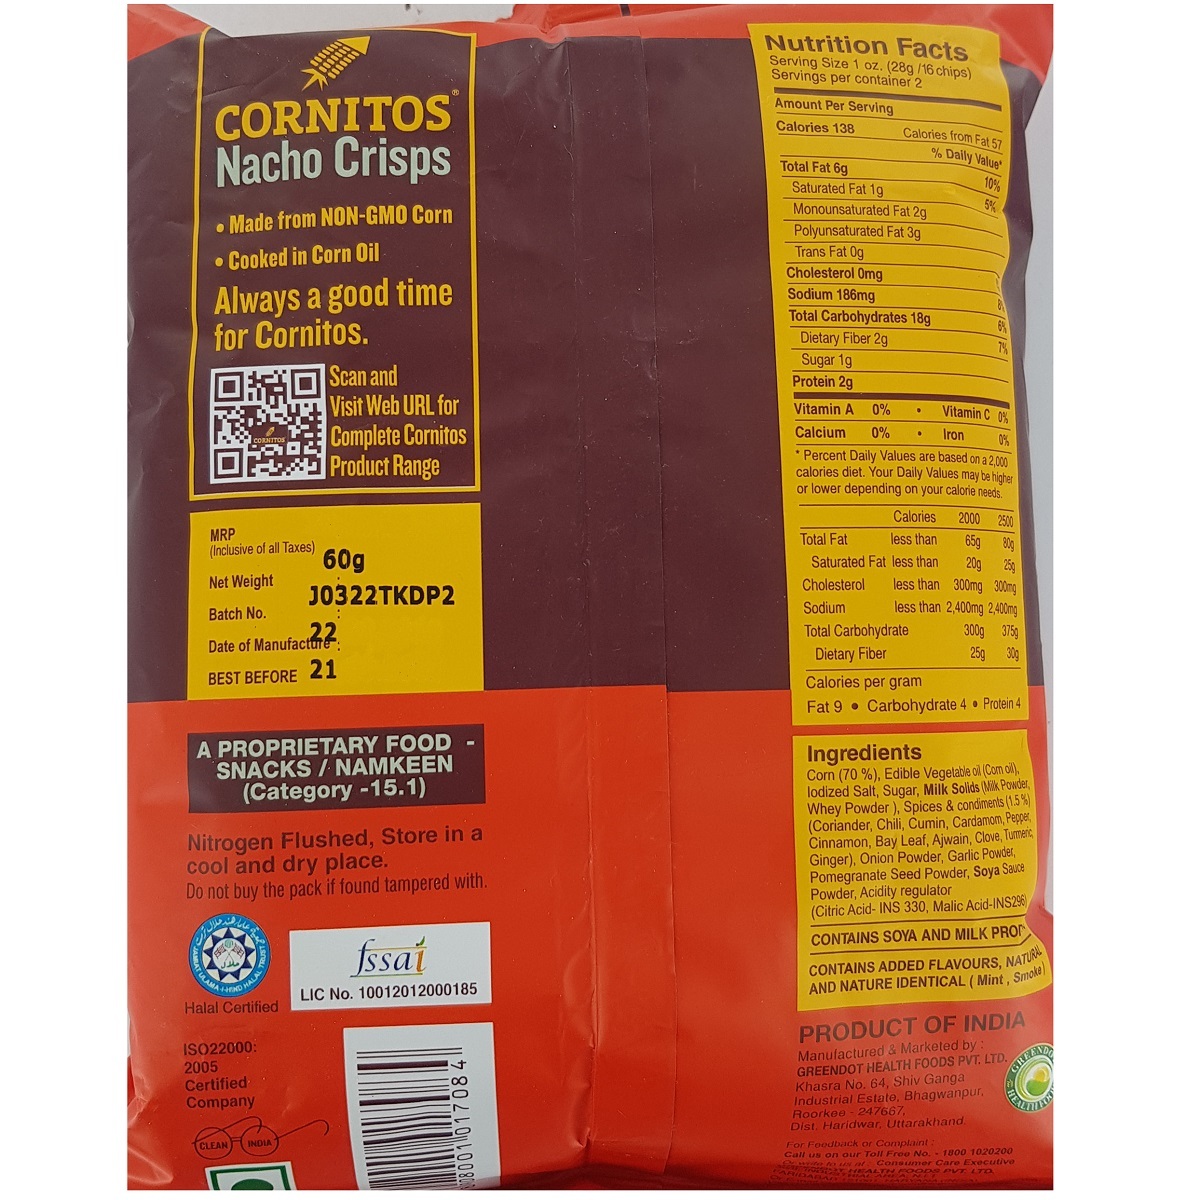 Cornitos Chips Tikka Masala 55g